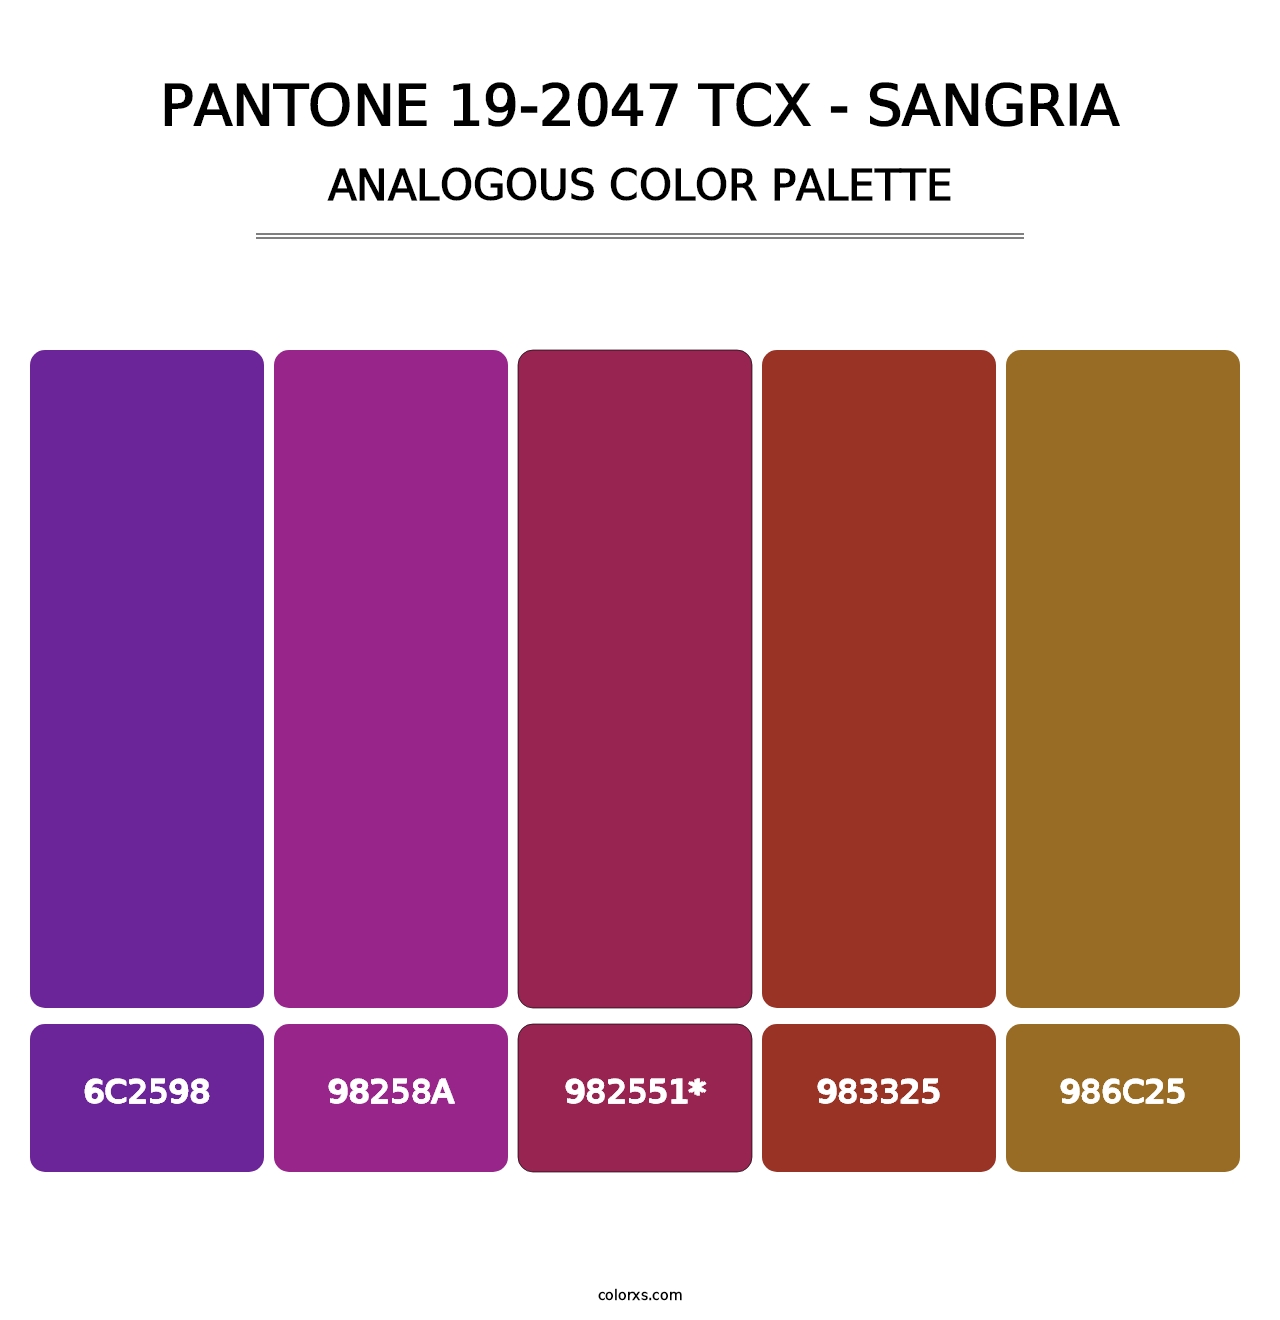 PANTONE 19-2047 TCX - Sangria - Analogous Color Palette